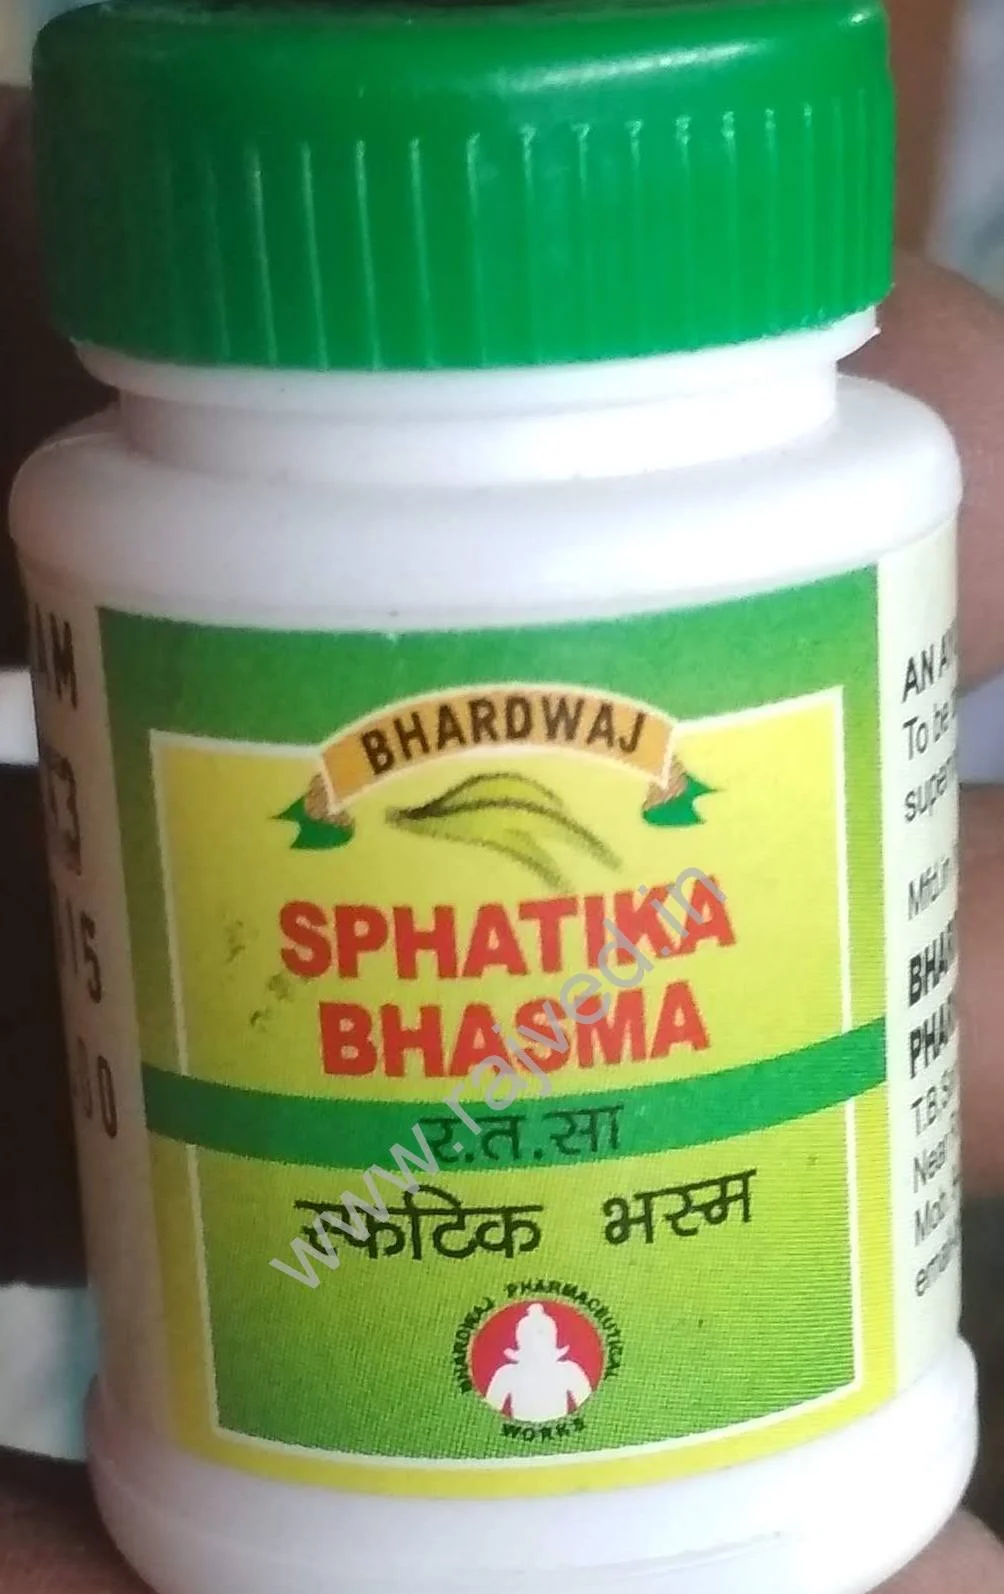 sphatika bhasma 100 gm upto 20% off bhardwaj pharmaceuticals indore